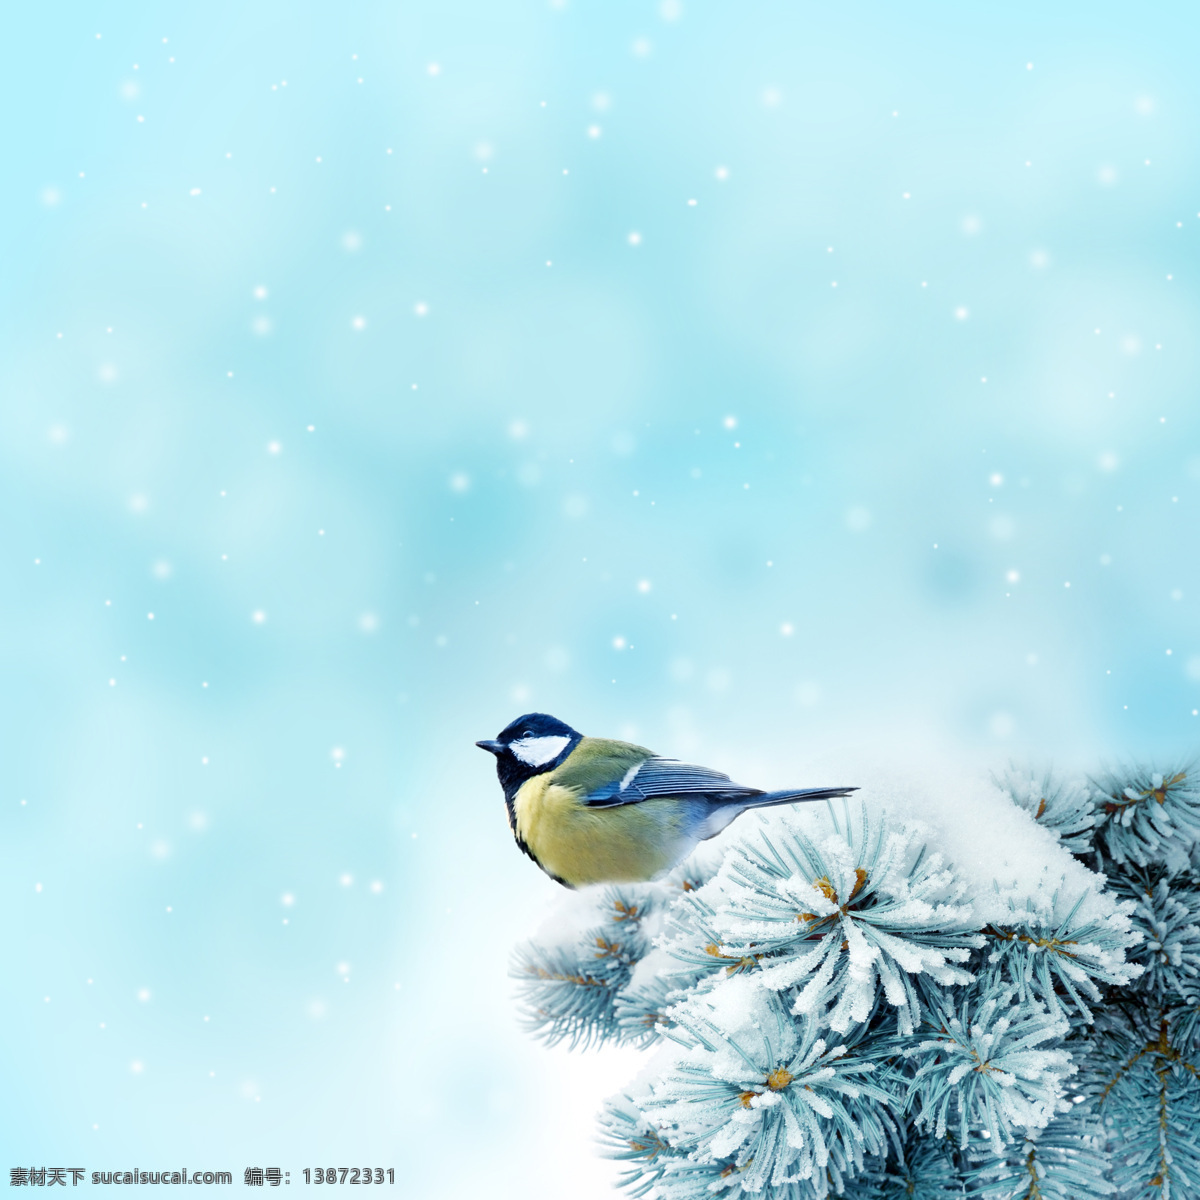 冬季雪景雪花 冬季 雪景 雪花 松枝 黄鹂 鸟 小鸟 雪松 自然风光 自然景观